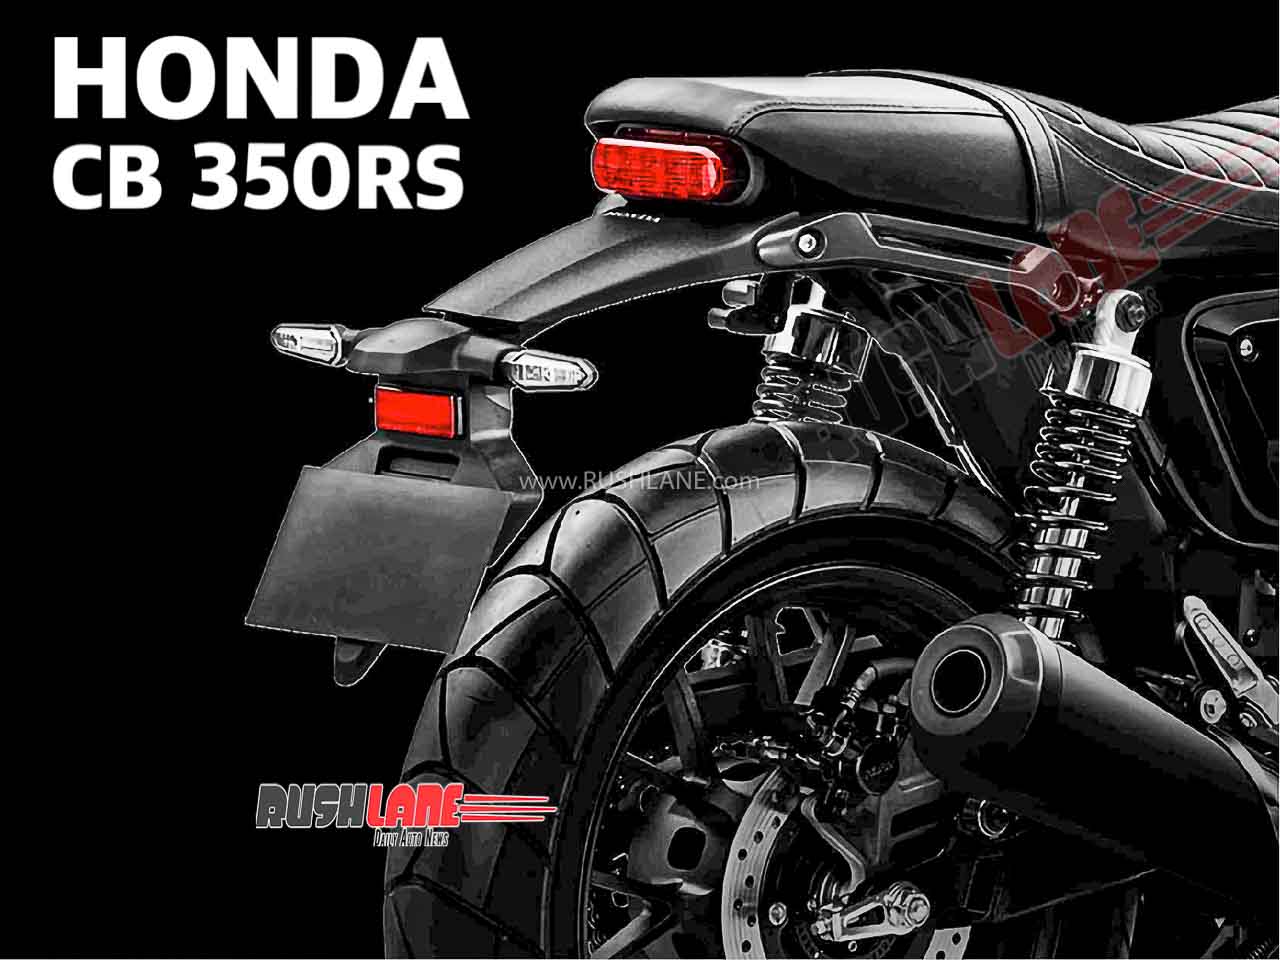 New Honda Cb350 Cafe Racer Name Cb350rs Leaked In New Teaser